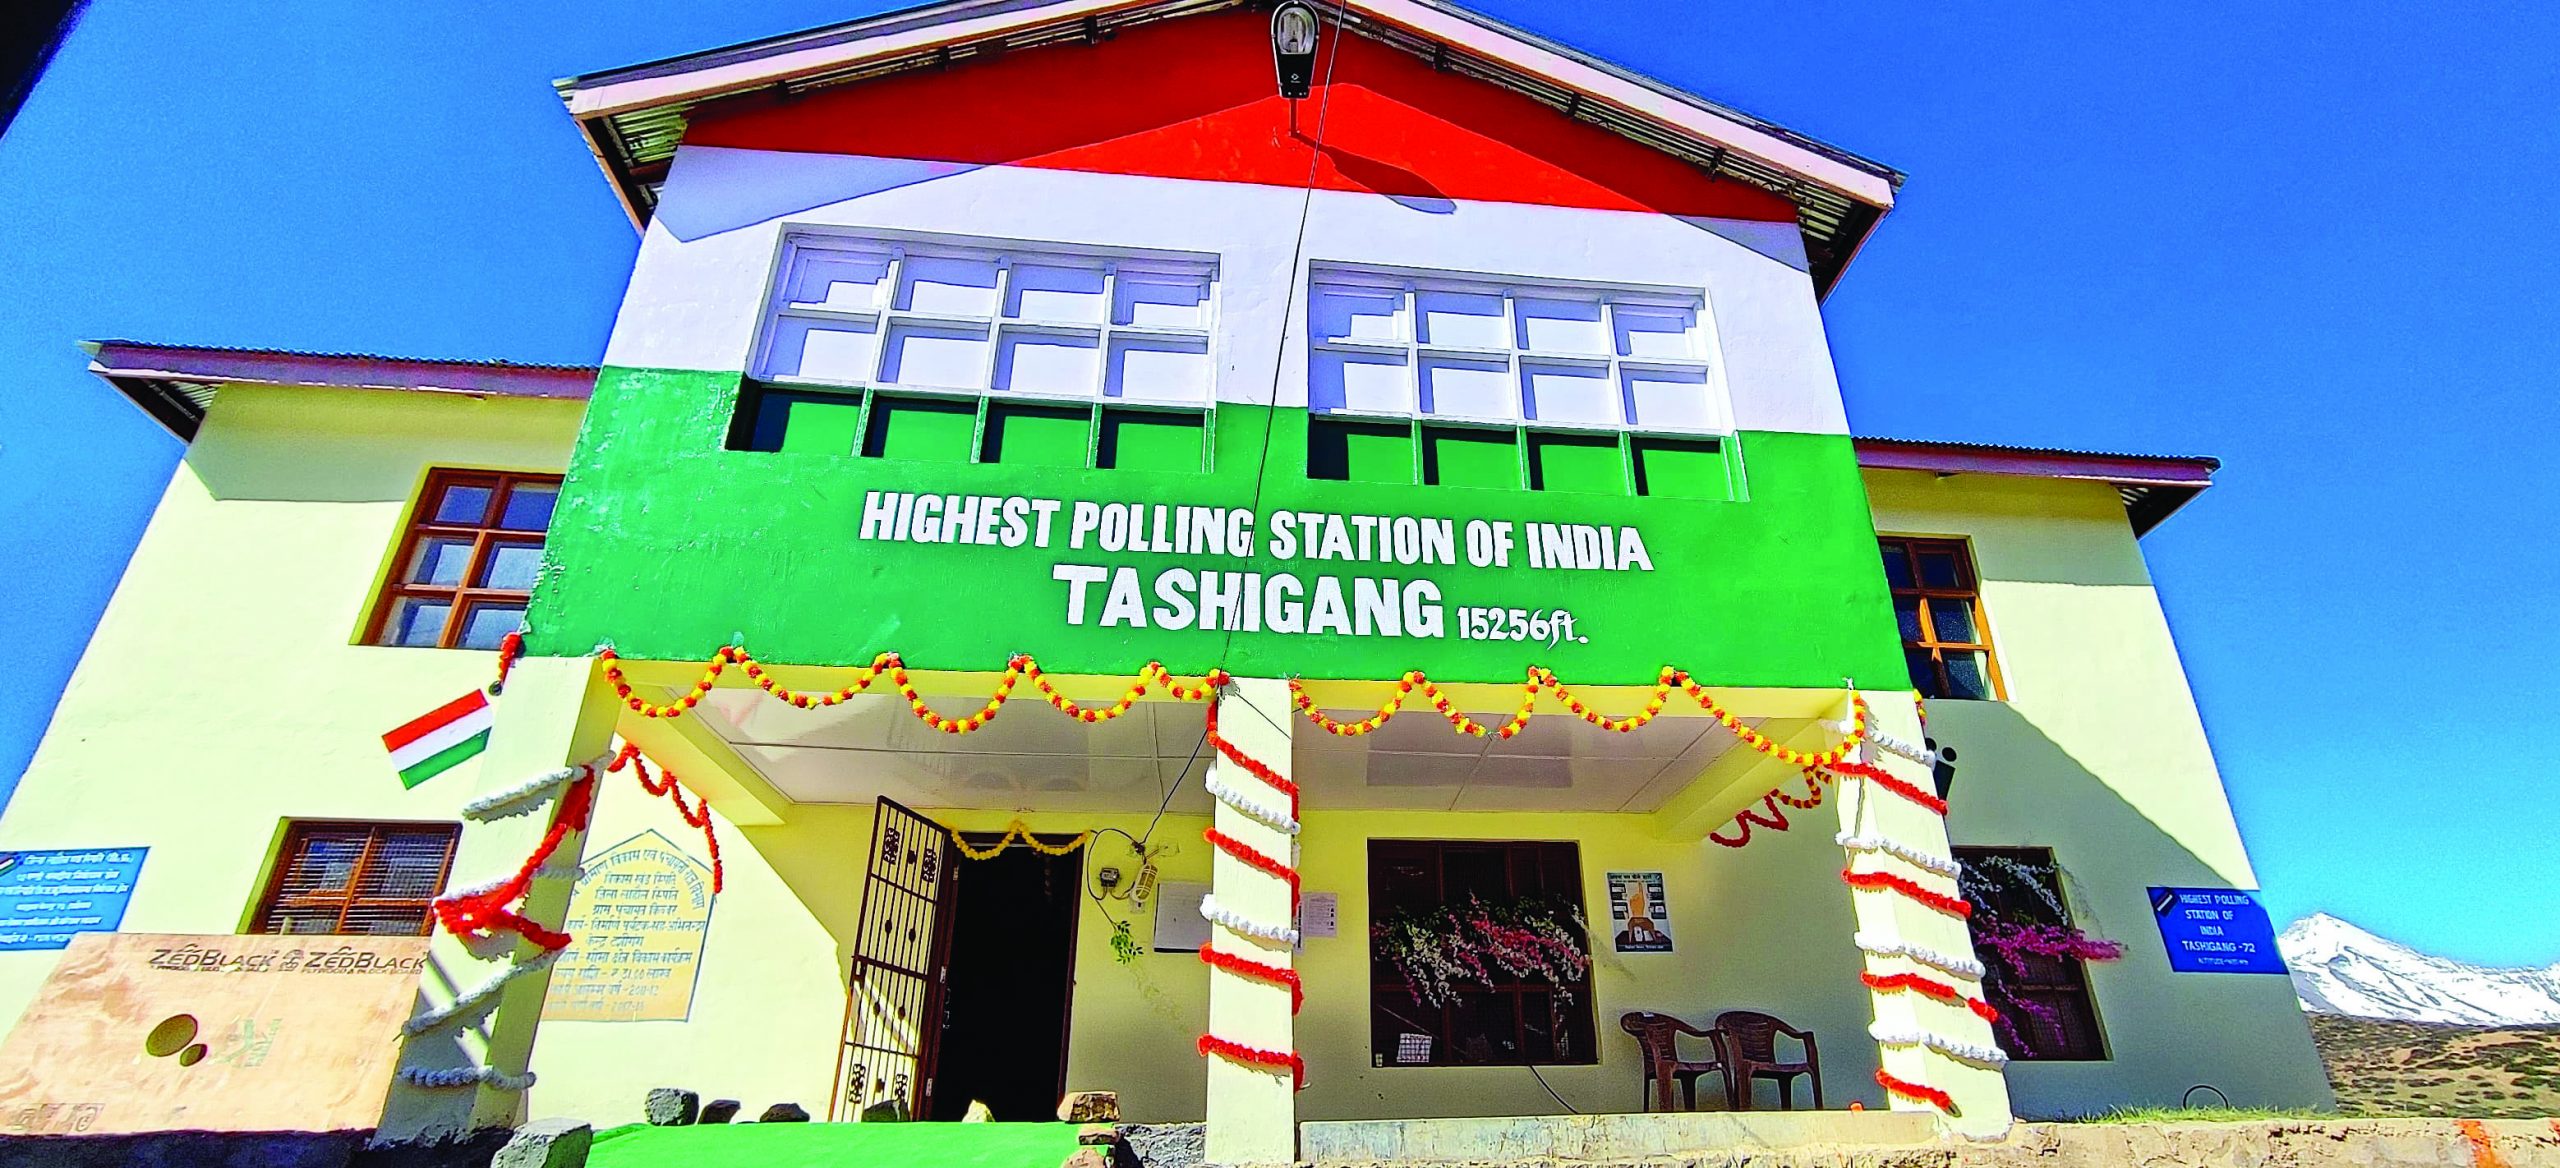 Himachal Election:  चमक उठा दुनिया का सबसे ऊंचा मतदान केंद्र टशीगंग, सिर्फ 62 लोग डालेंगे वोट